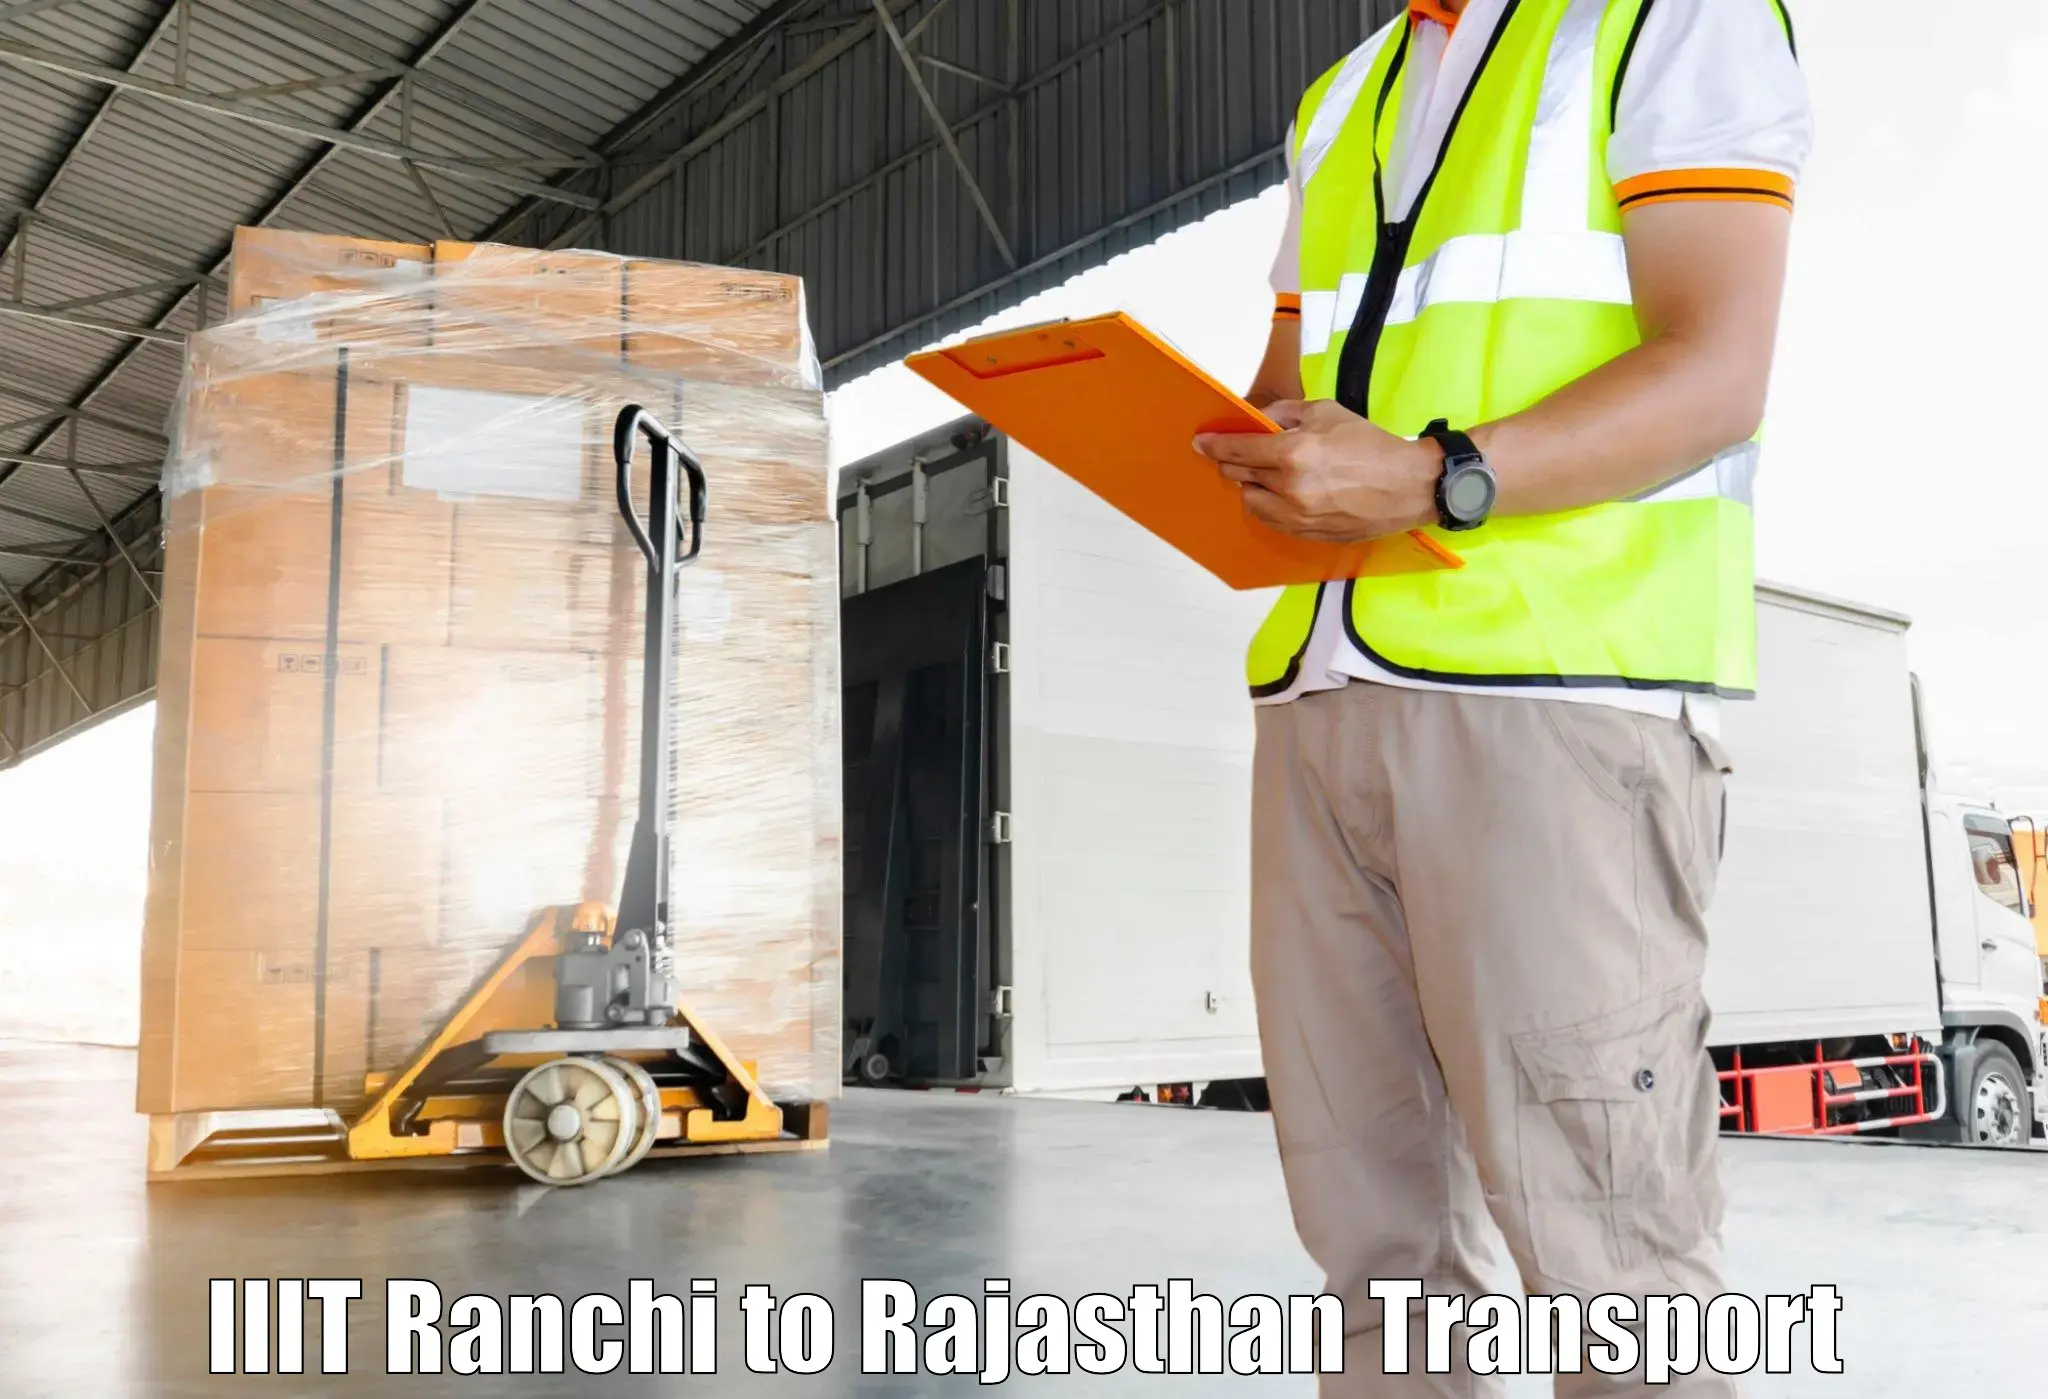 Transportation solution services IIIT Ranchi to Bilara